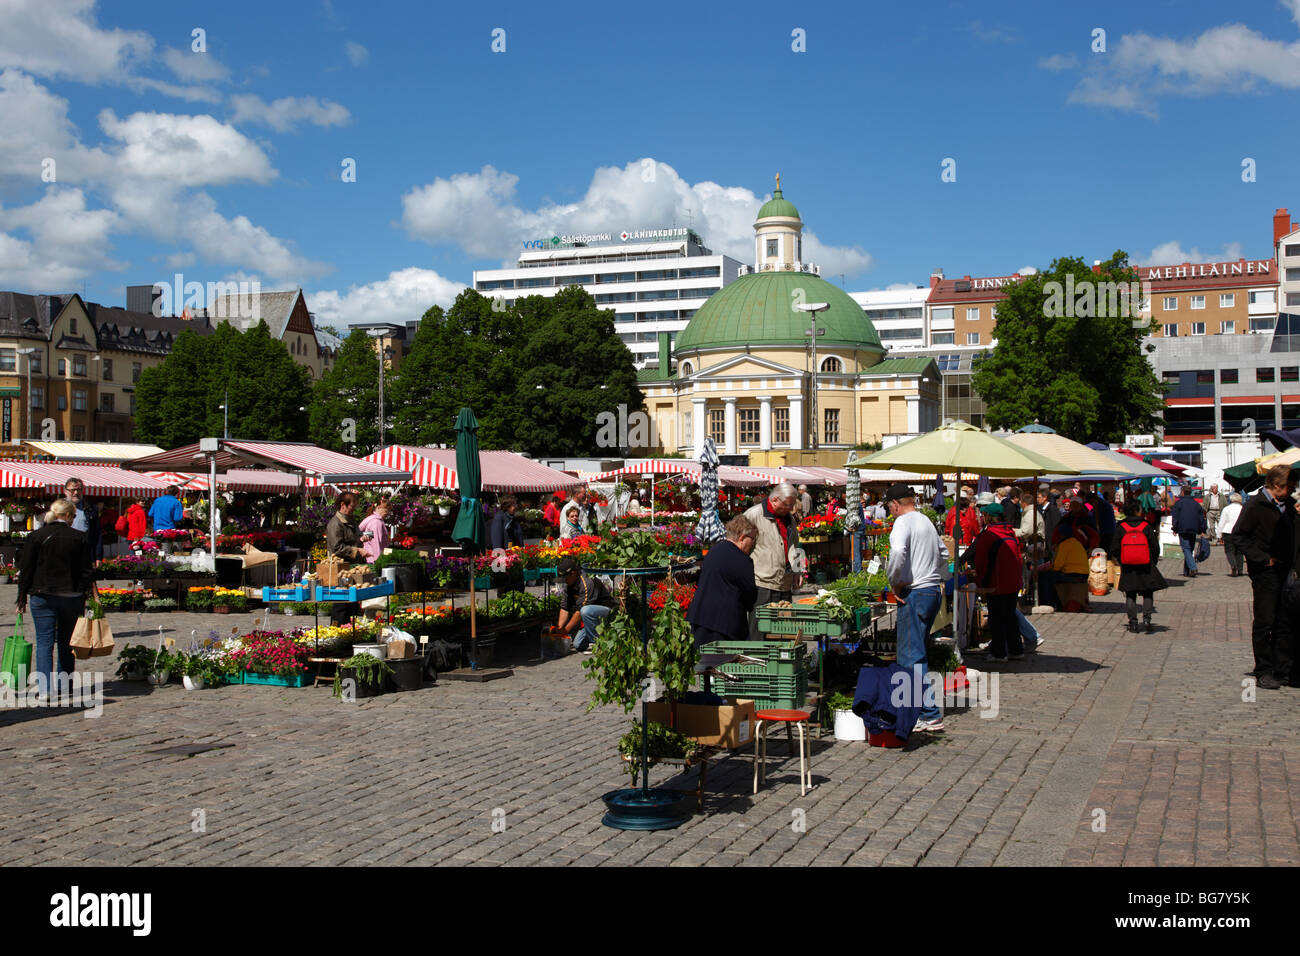 Finland, Region of Finland Proper, Western Finland, Turku, City Square, Market Square, Kauppatori Square, Orthodox Church Stock Photo